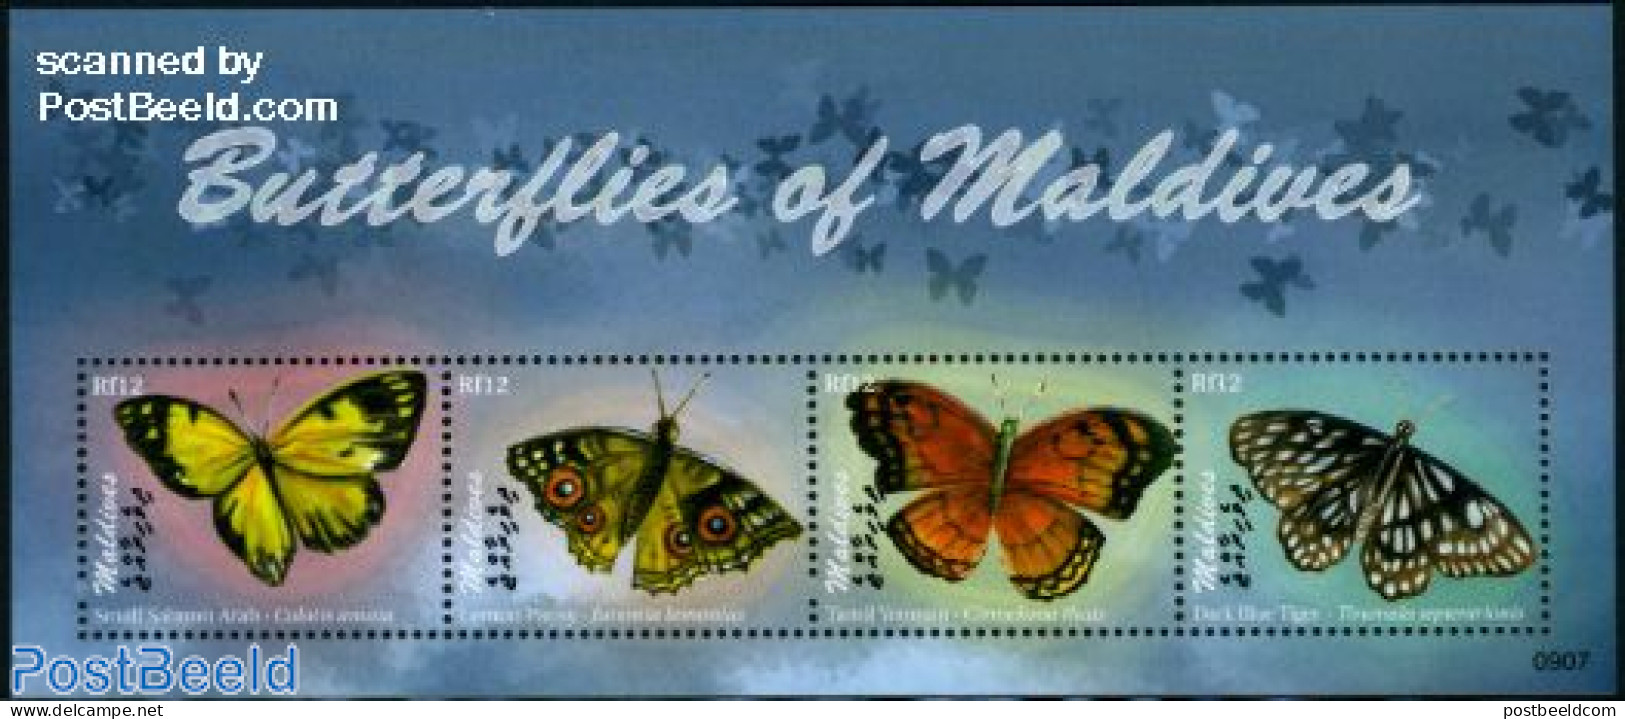 Maldives 2009 Butterflies 4v M/s, Mint NH, Nature - Butterflies - Maldives (1965-...)